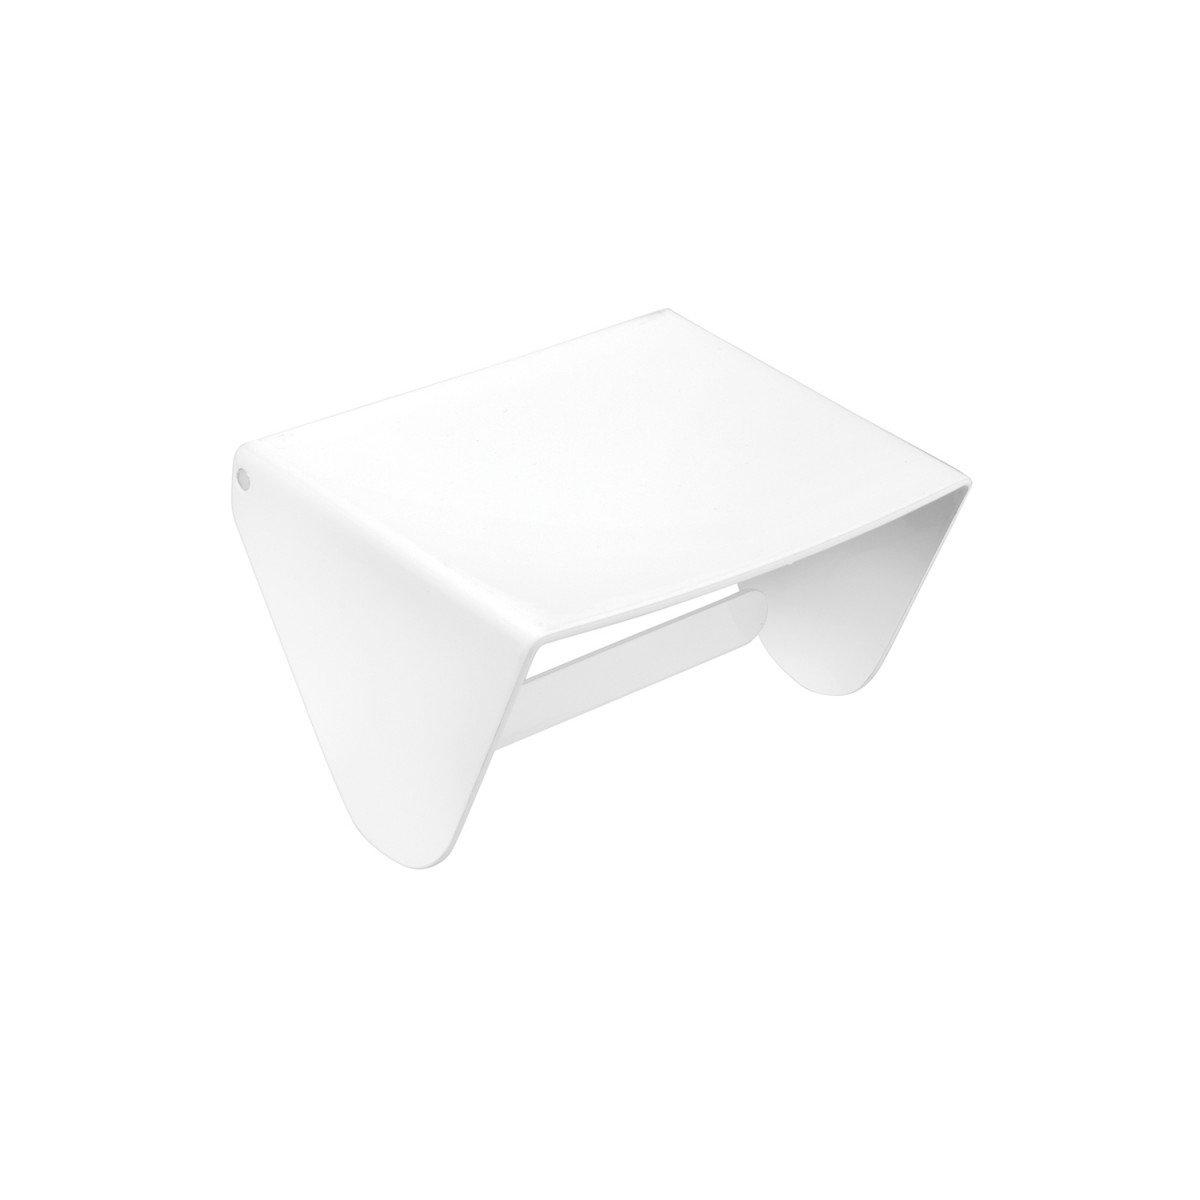 Cosmic- Papierrollenhalter Black & White mit Deckel-Toilettenpapierhalter-Cosmic-Weiß glänzend-TOJU Interior